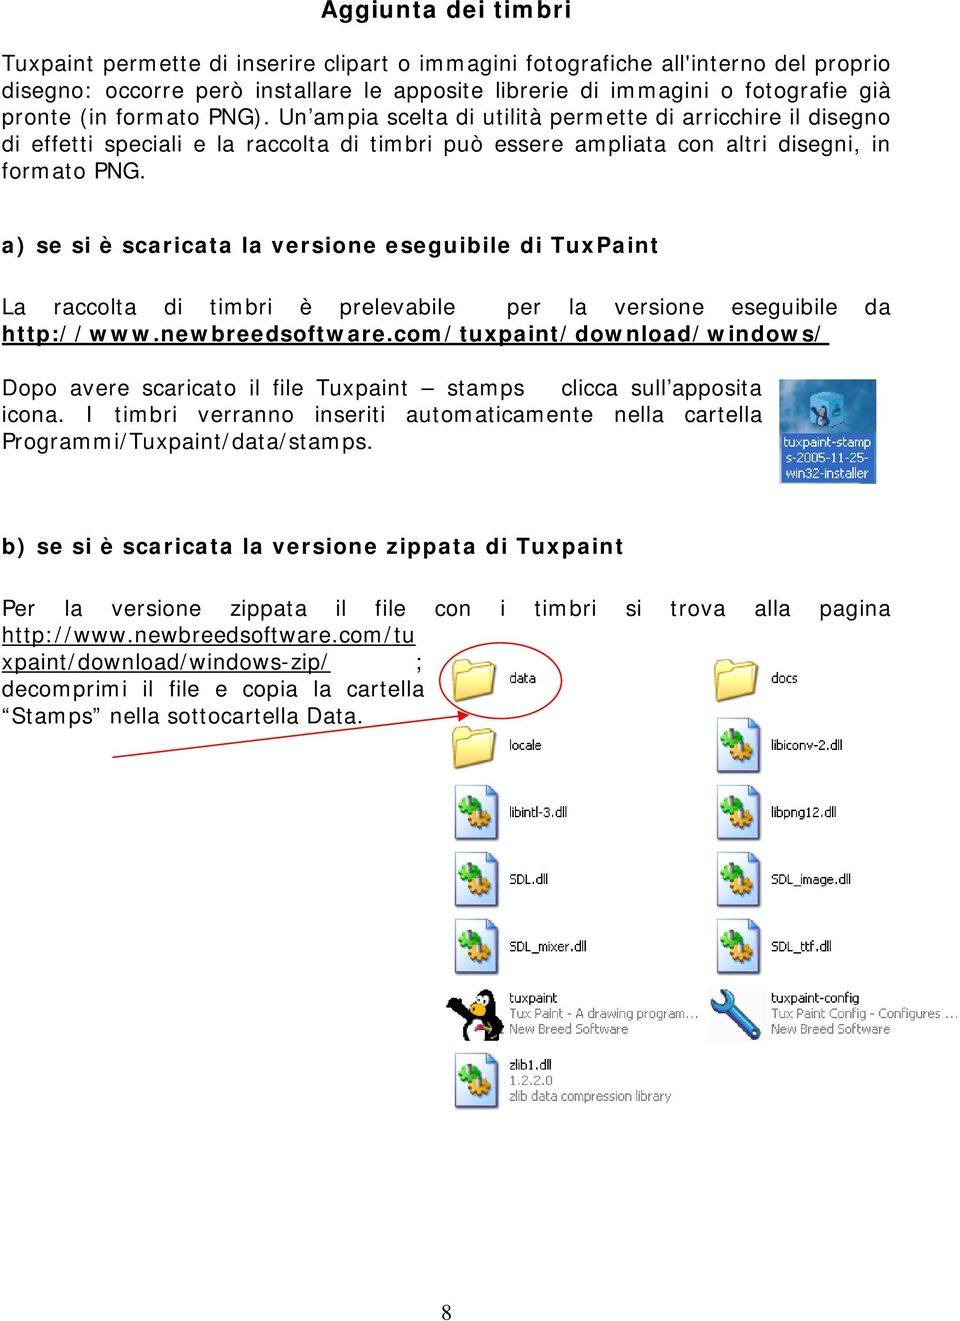 a) se si è scaricata la versione eseguibile di TuxPaint La raccolta di timbri è prelevabile per la versione eseguibile da http://www.newbreedsoftware.